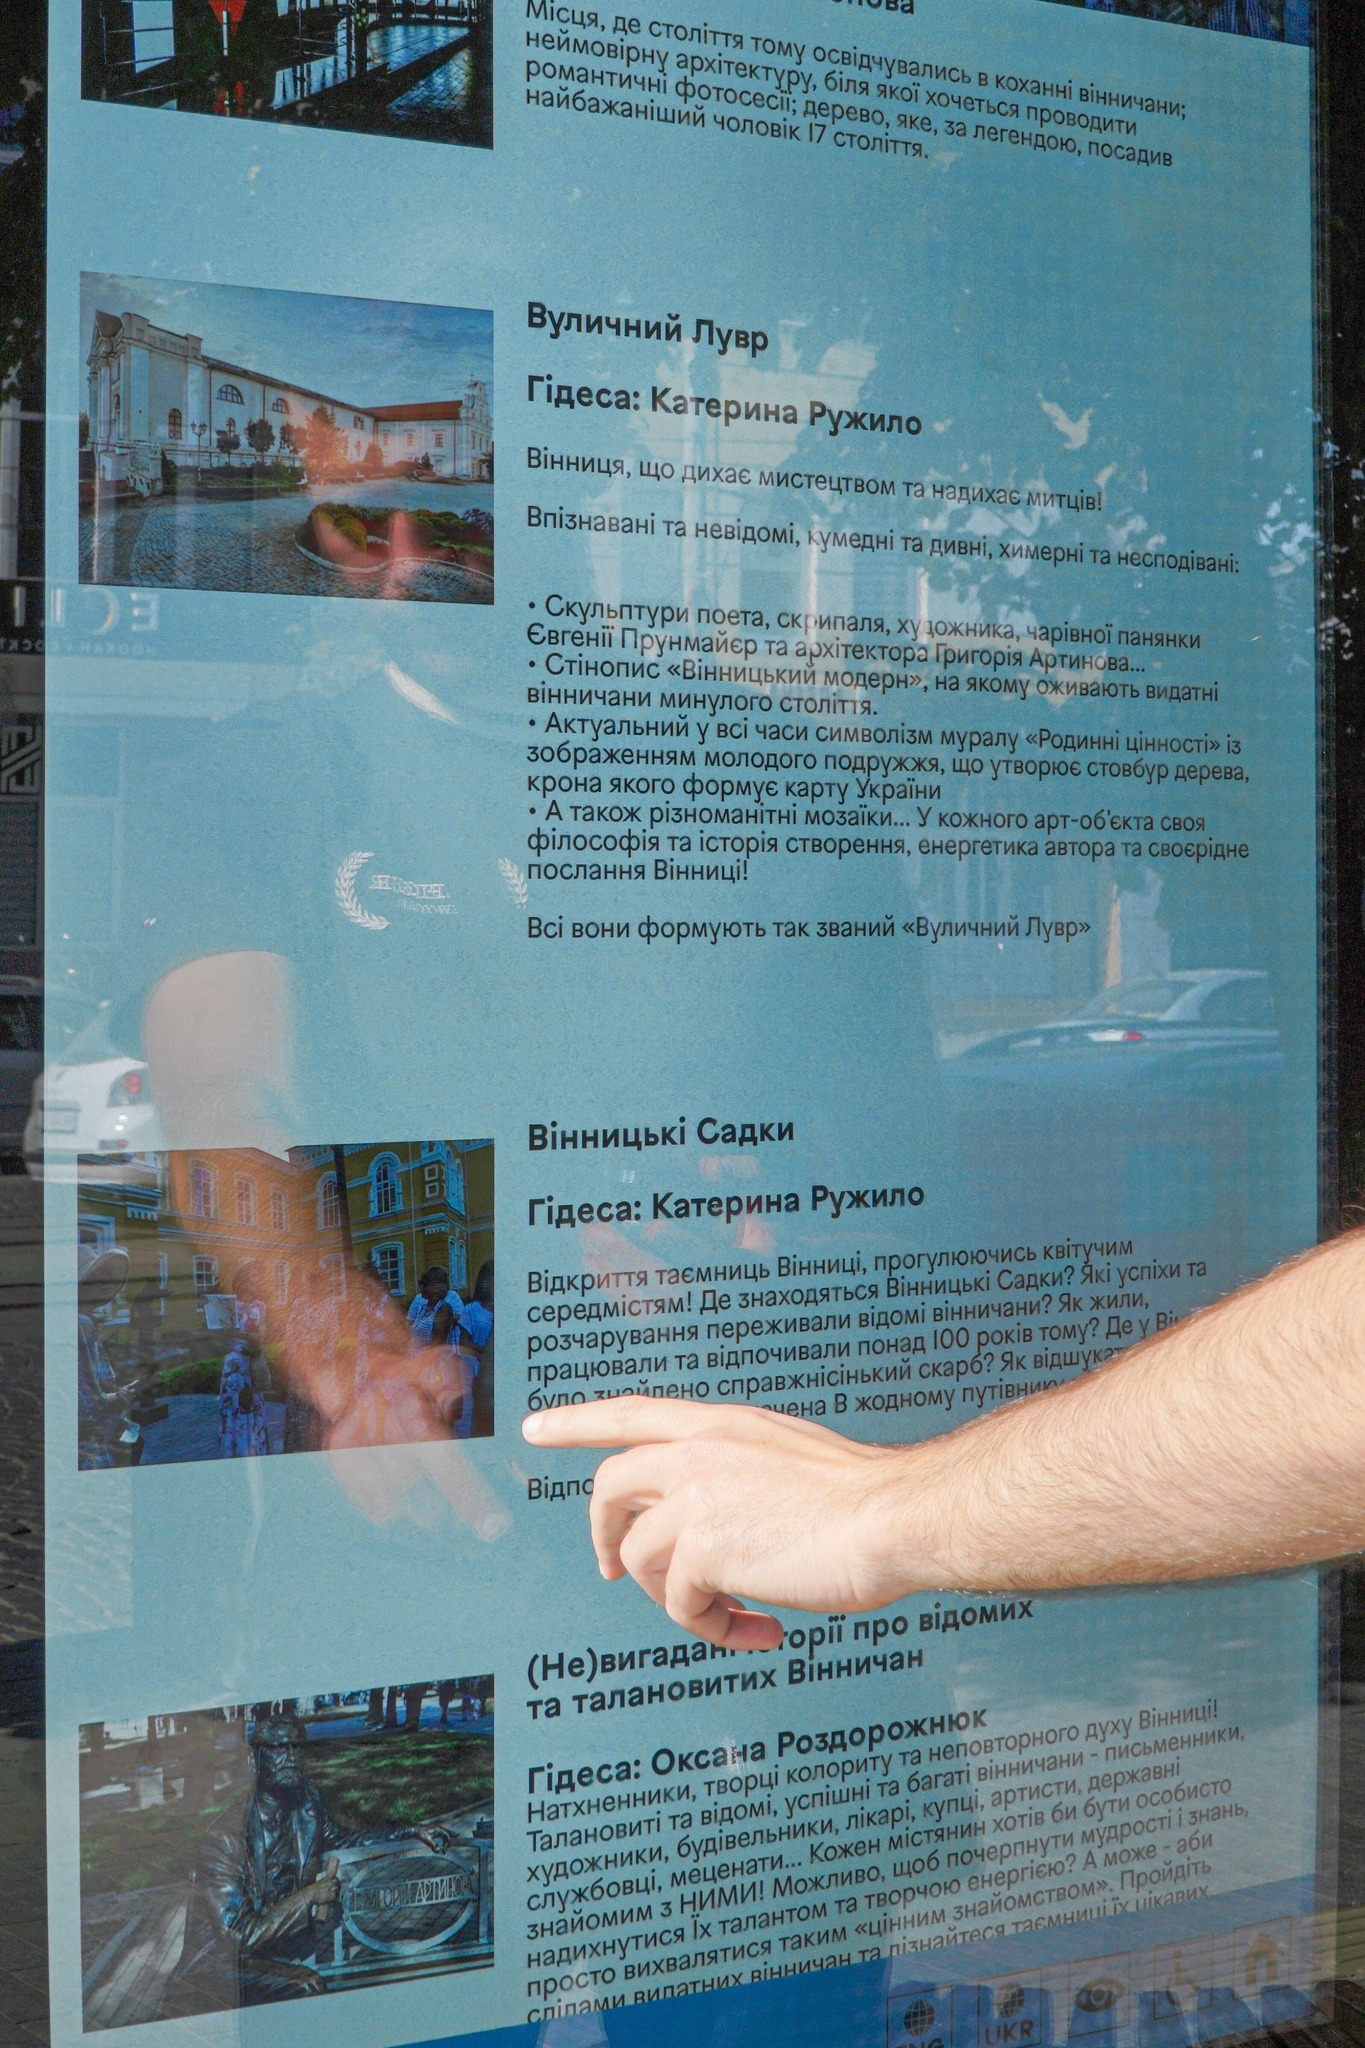 У Вінниці з'явився цифровий туристичний кіоск - як він працює